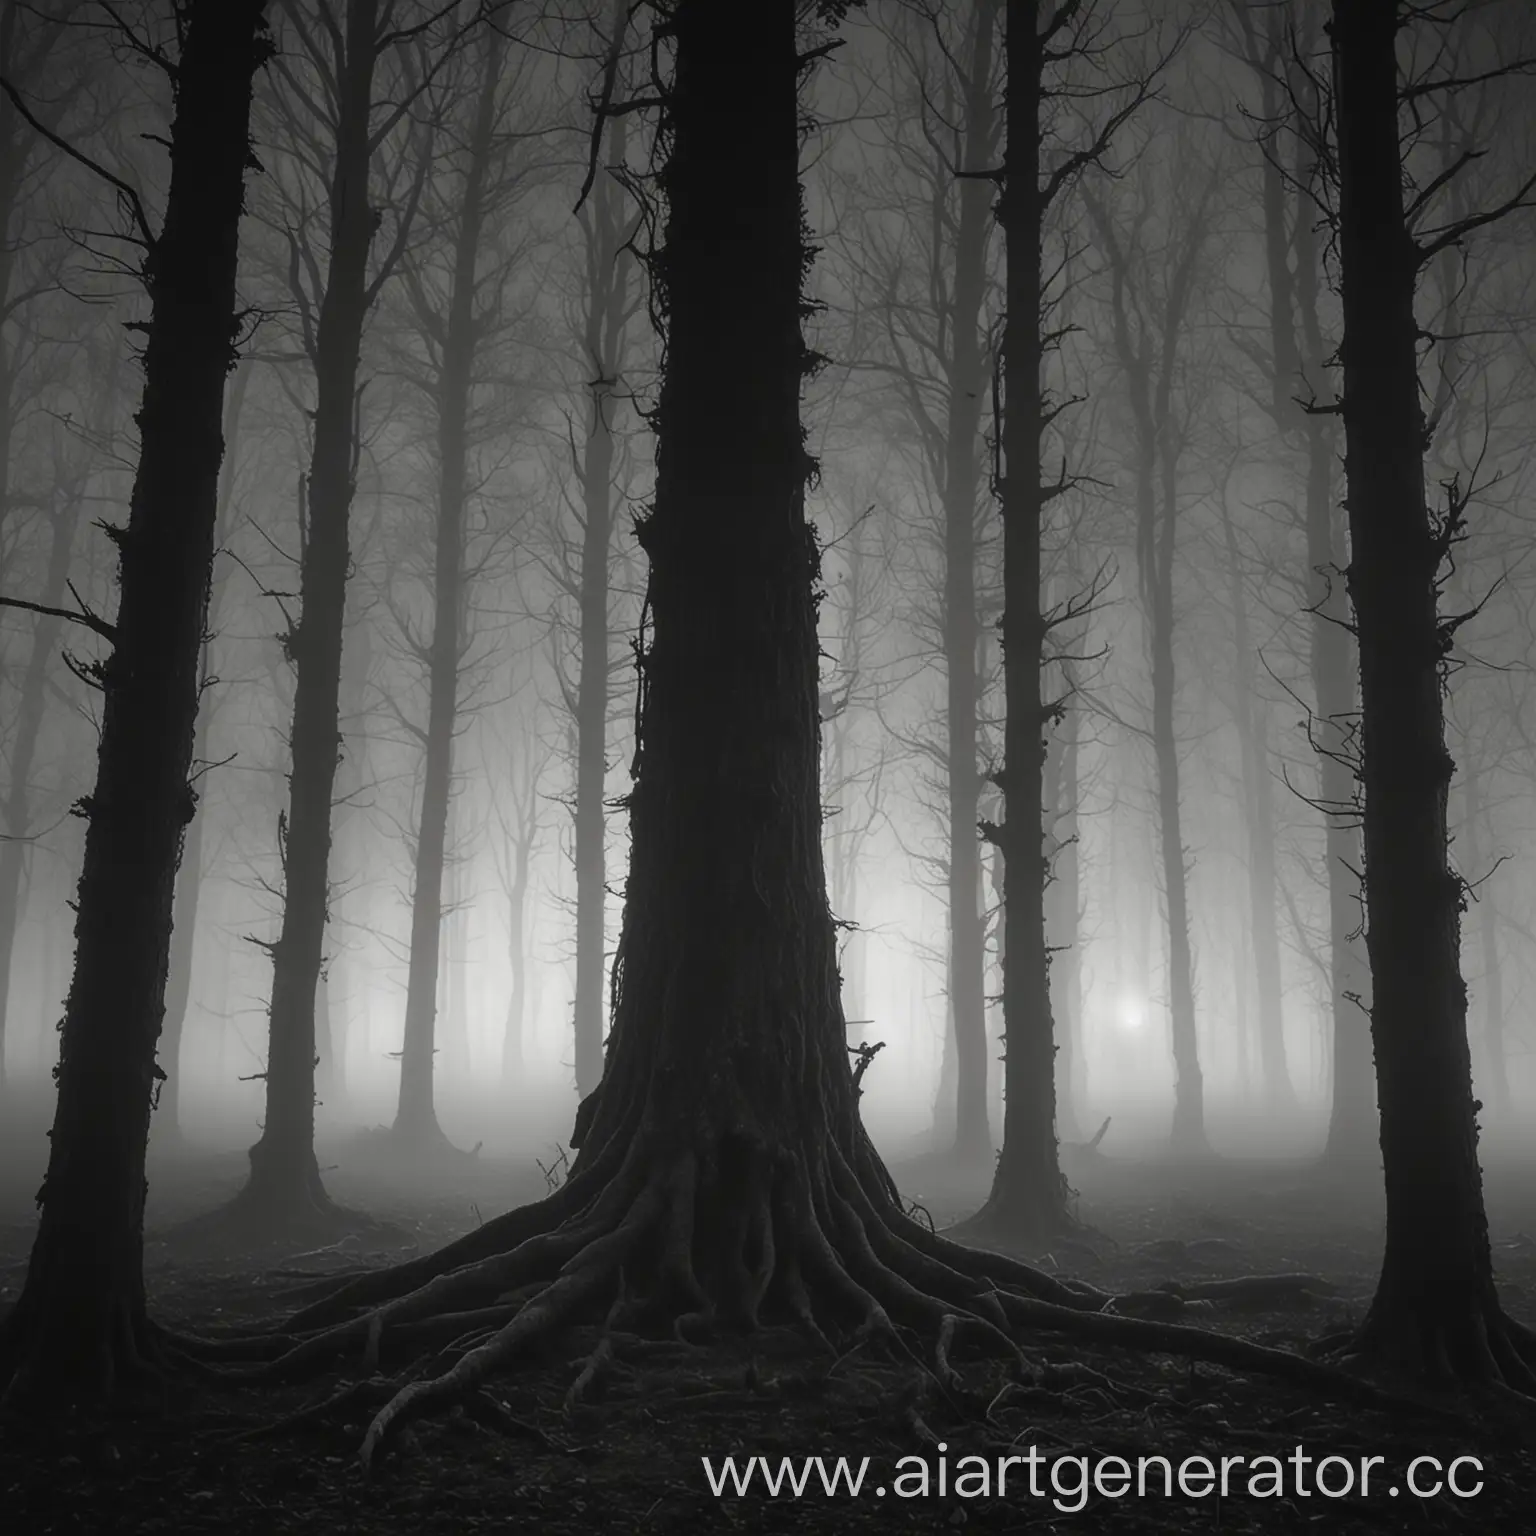 лес ночью, все в тумане, а за деревом виднеется сущность черная